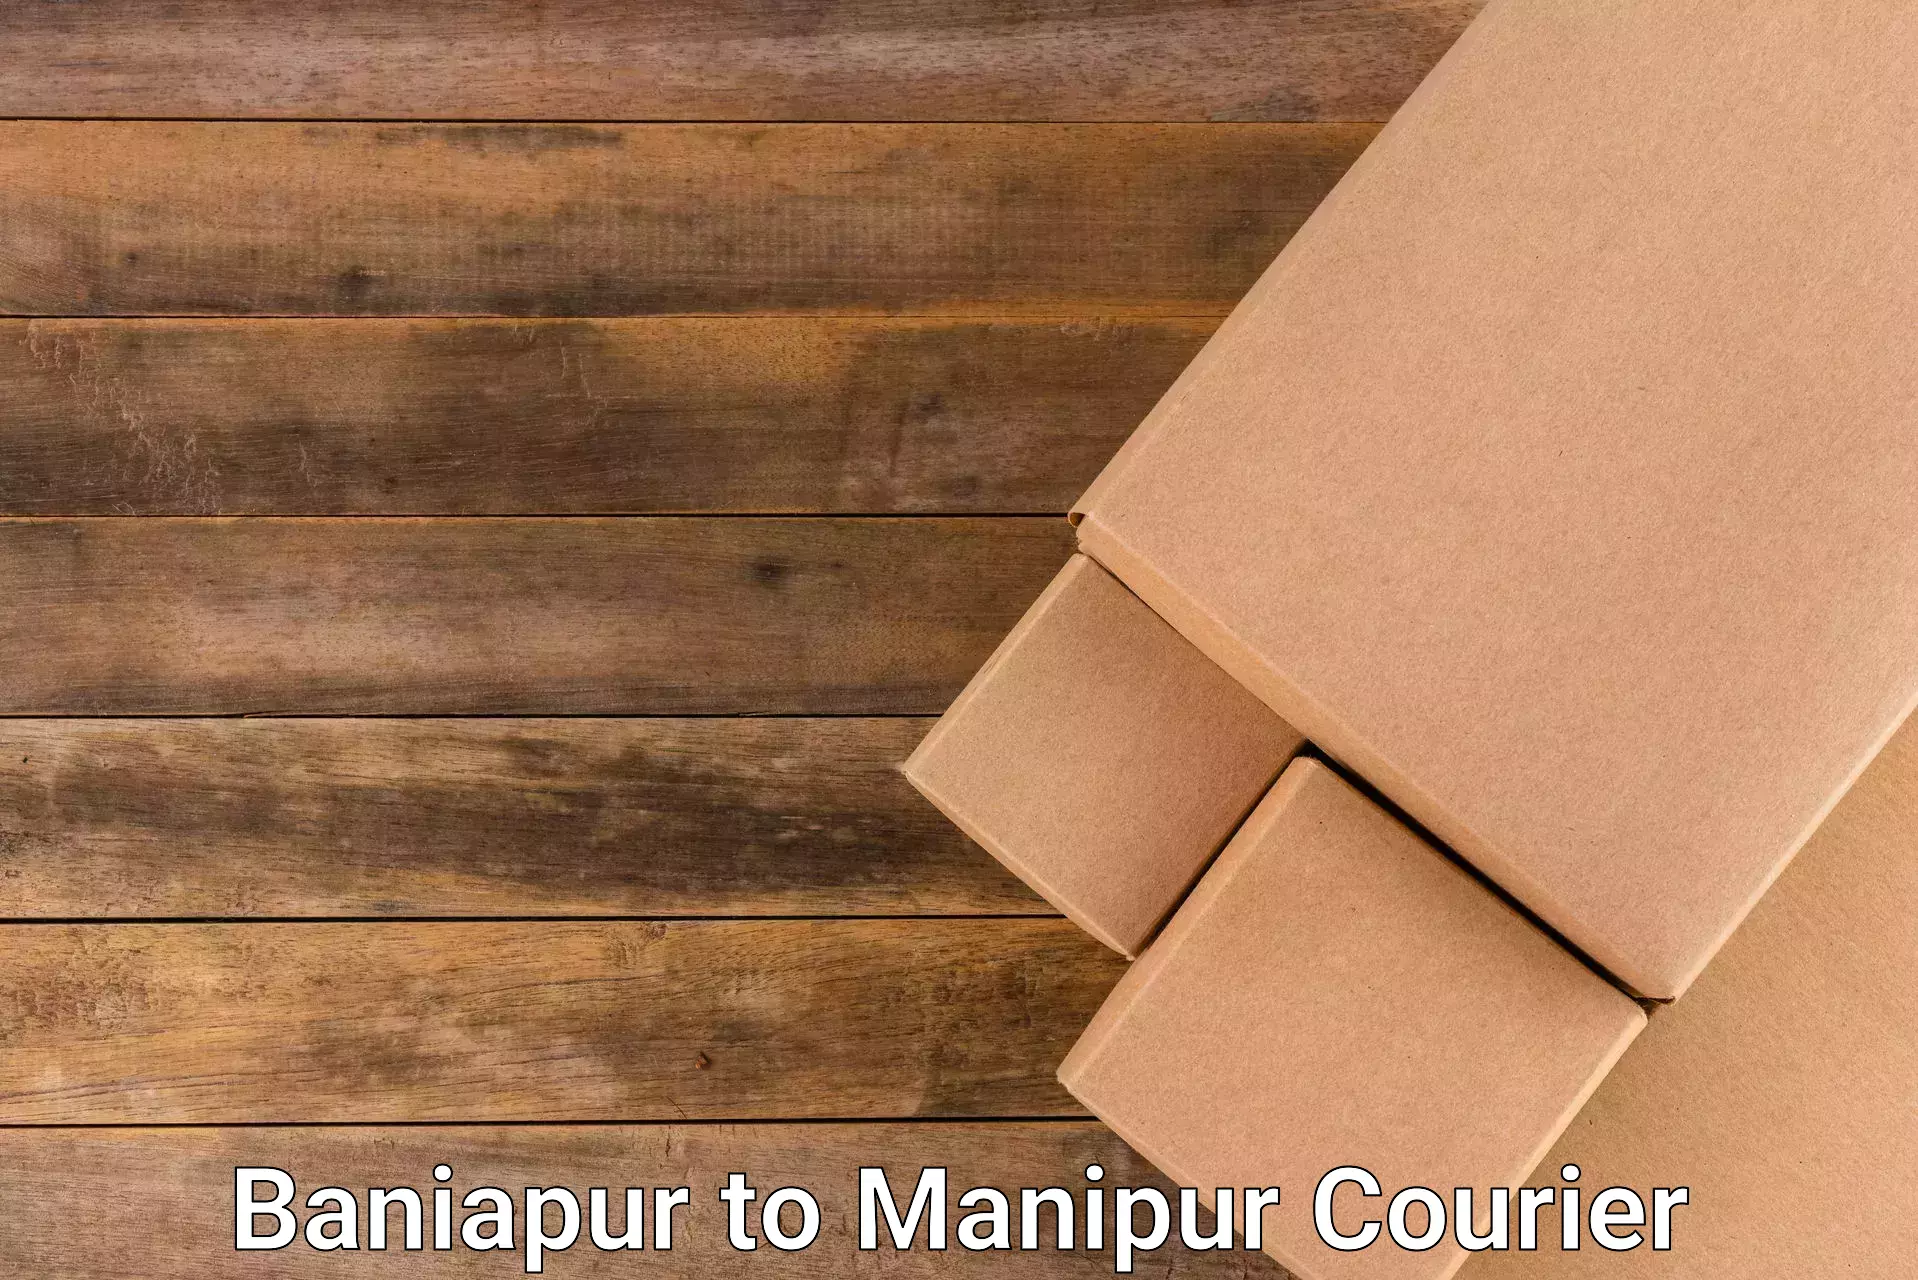 Seamless shipping service Baniapur to Moirang